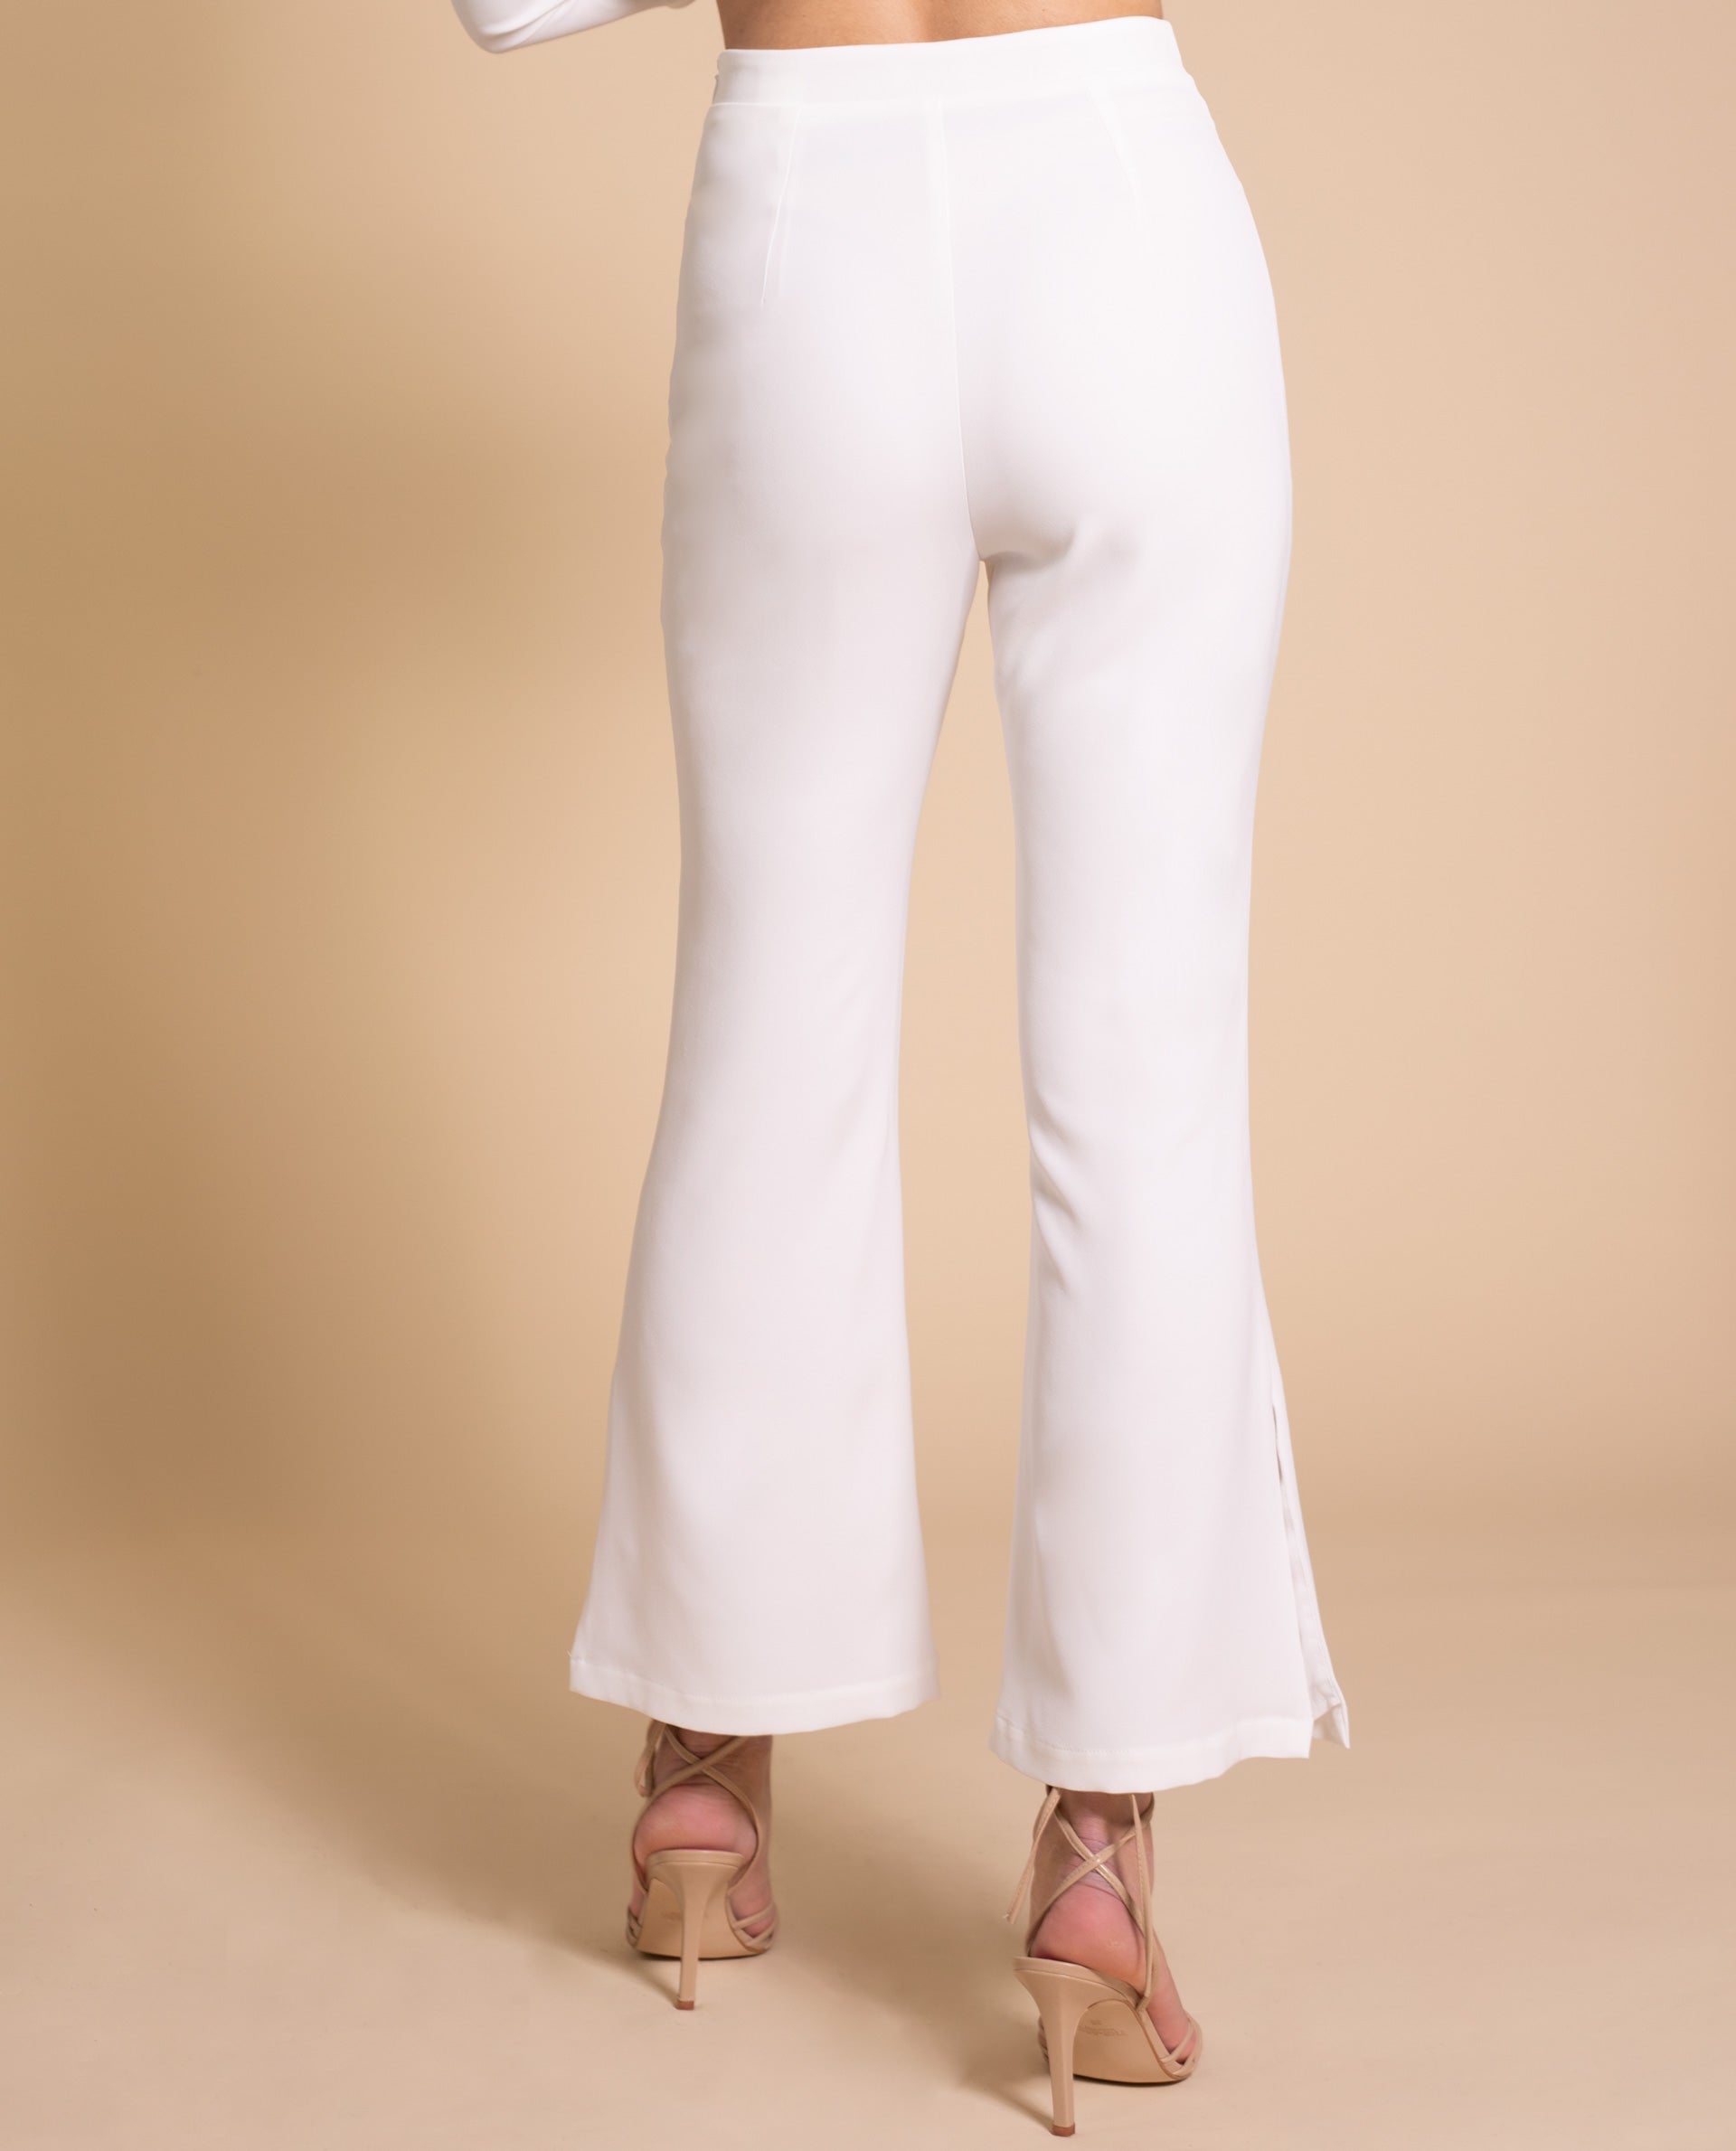 Las mejores ofertas en Trajes de Pantalón Blanco para Mujeres